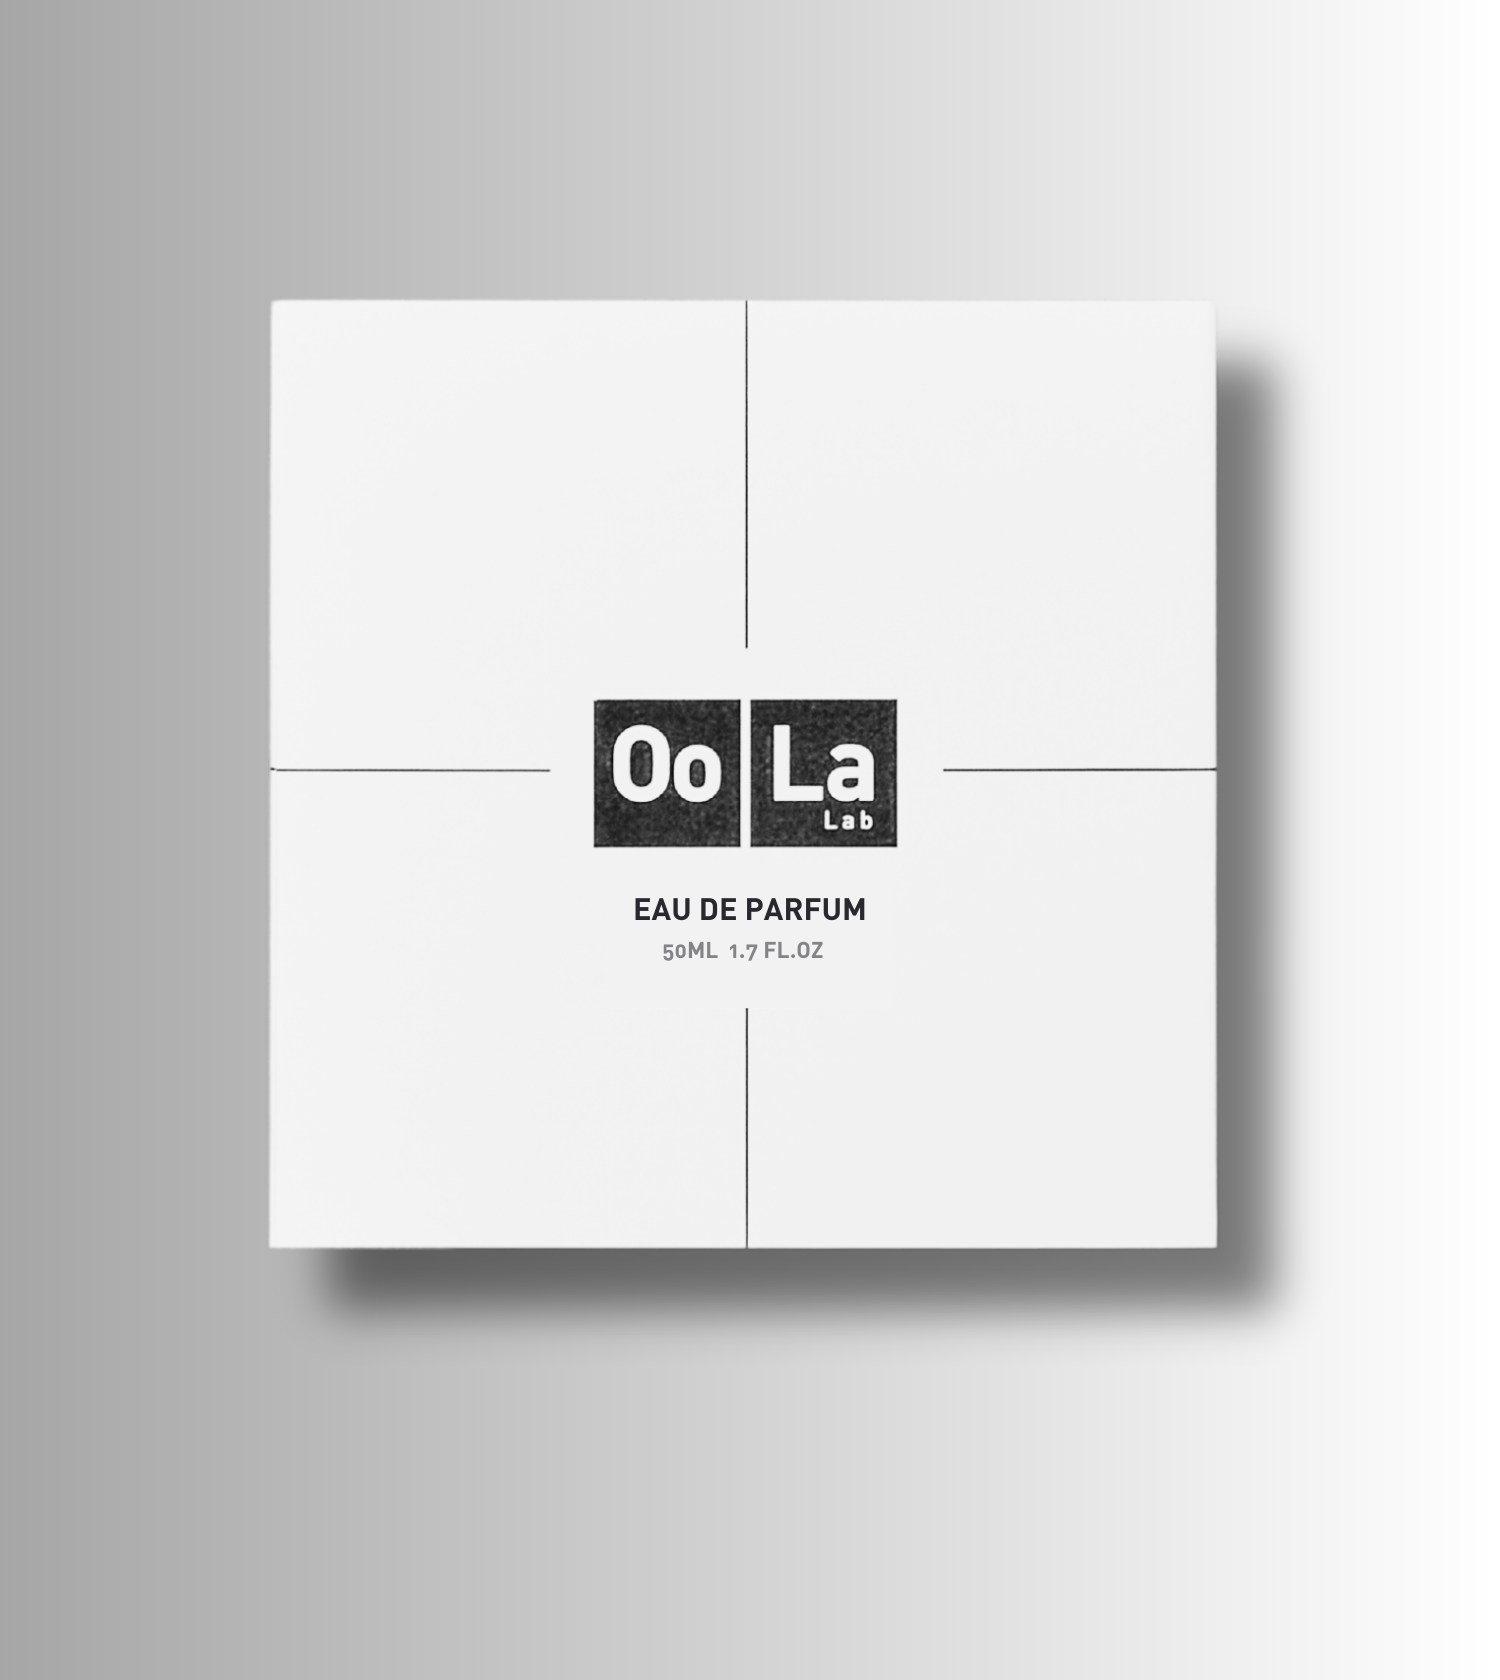 OoLa-Lab-eau-de-parfum-box.png